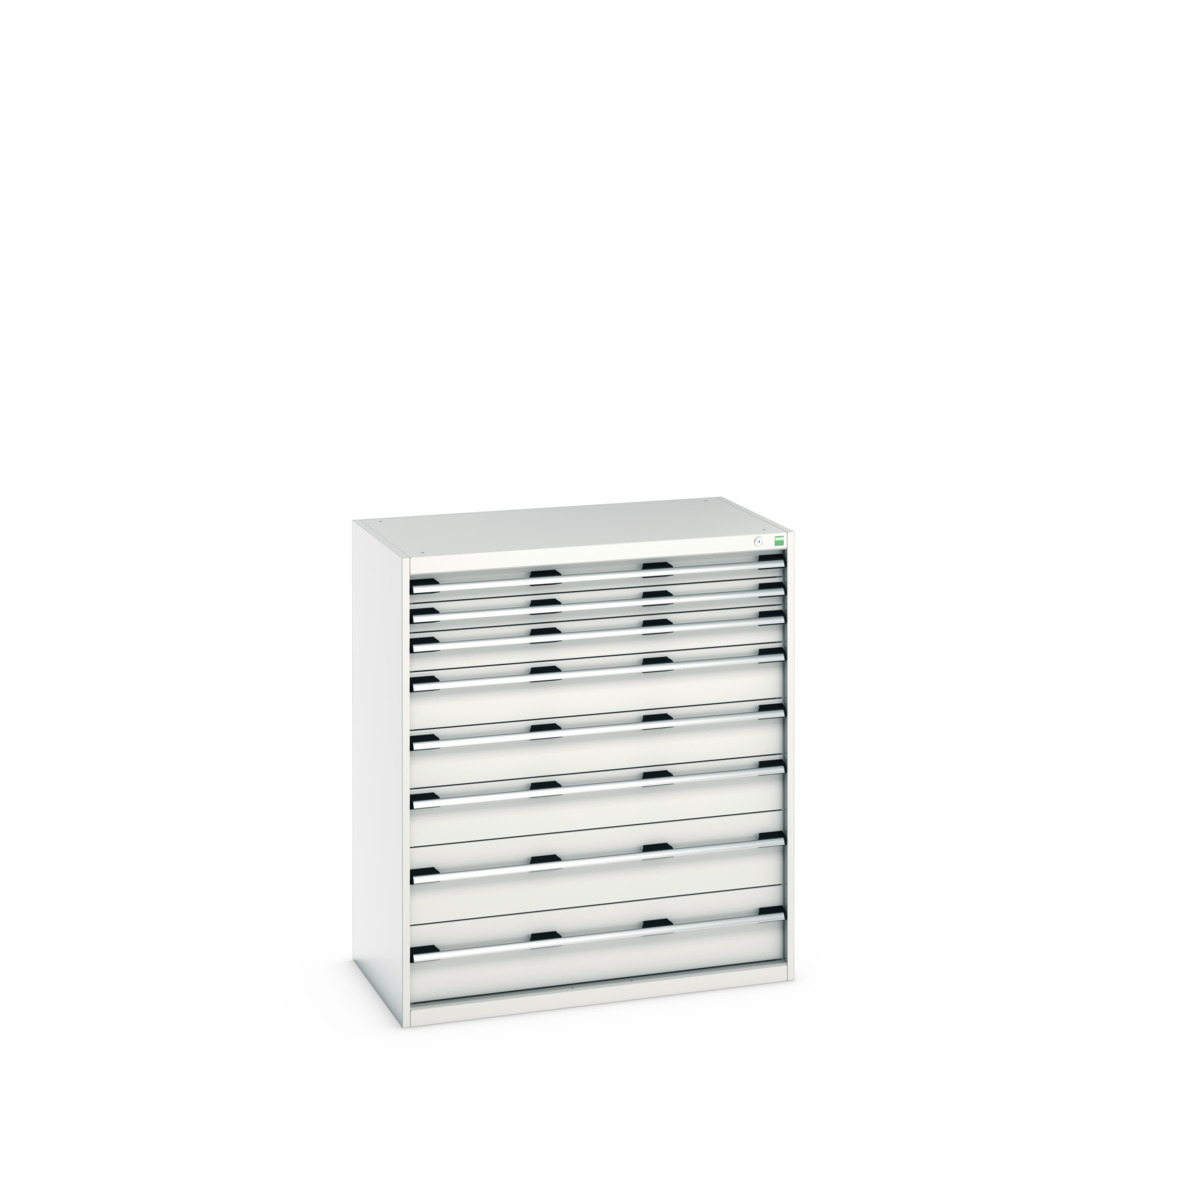 40021040.16V - cubio drawer cabinet